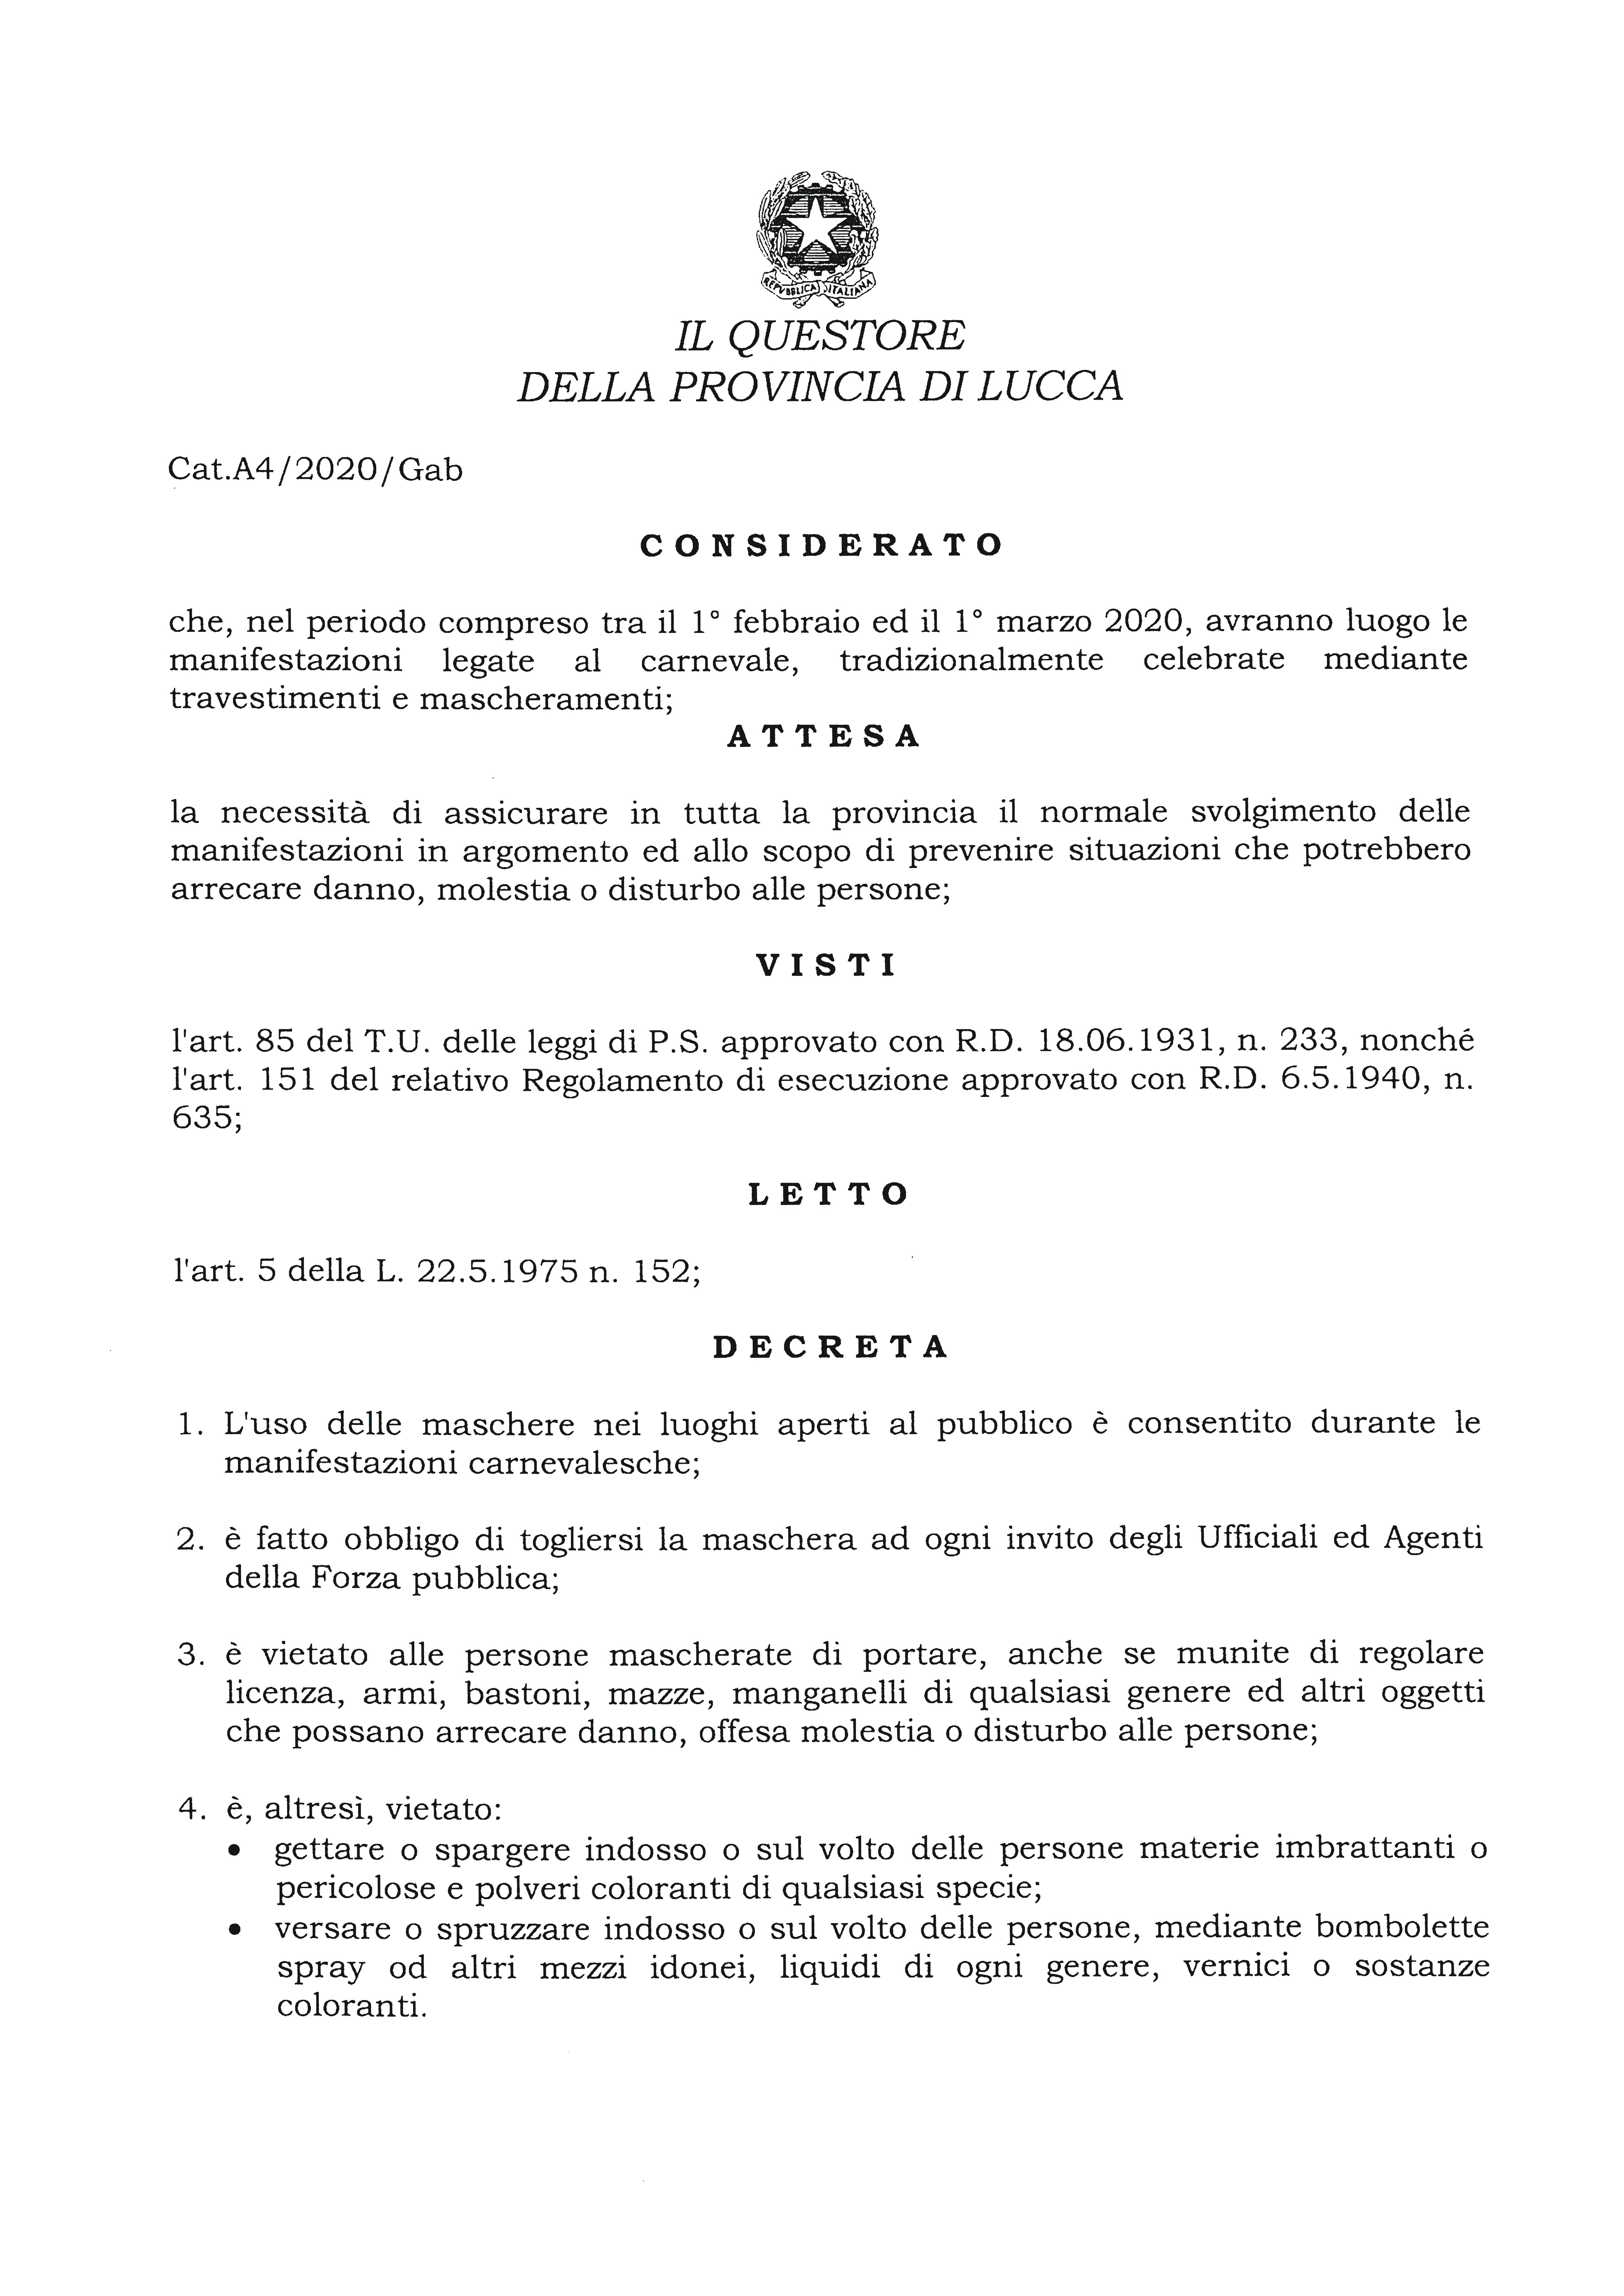 Viareggio - Carnevale 2020, il decreto del Questore di Lucca